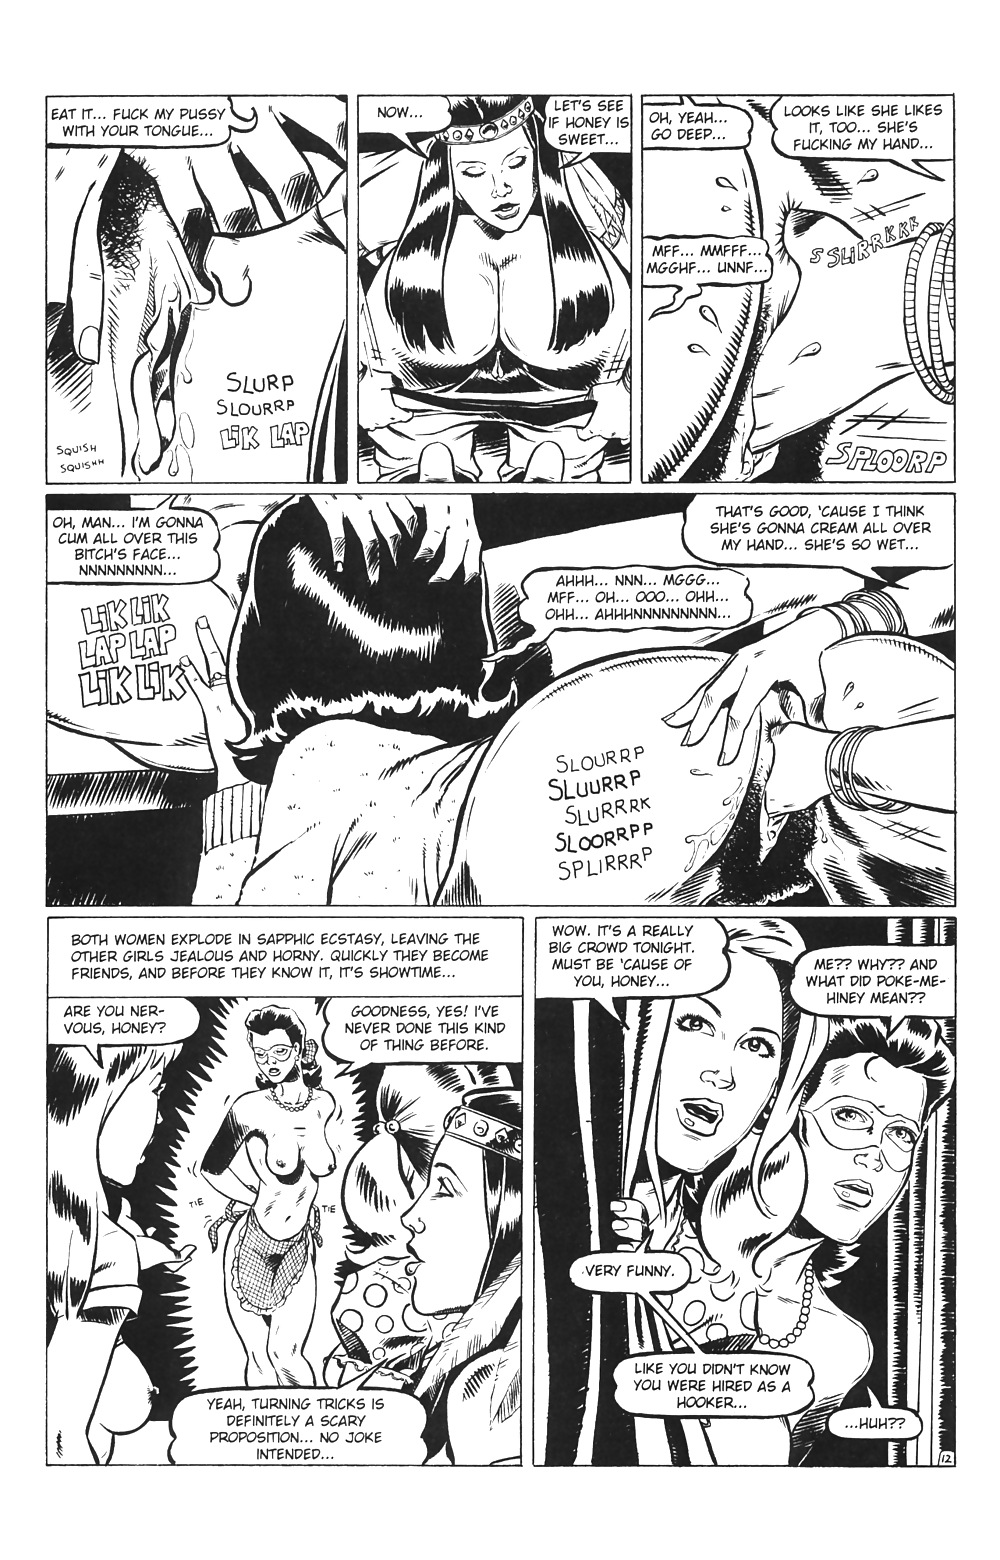 Ménagères En Jeu # 03 - Comics Eros Par Rebecca - Octobre 2001 #25713999